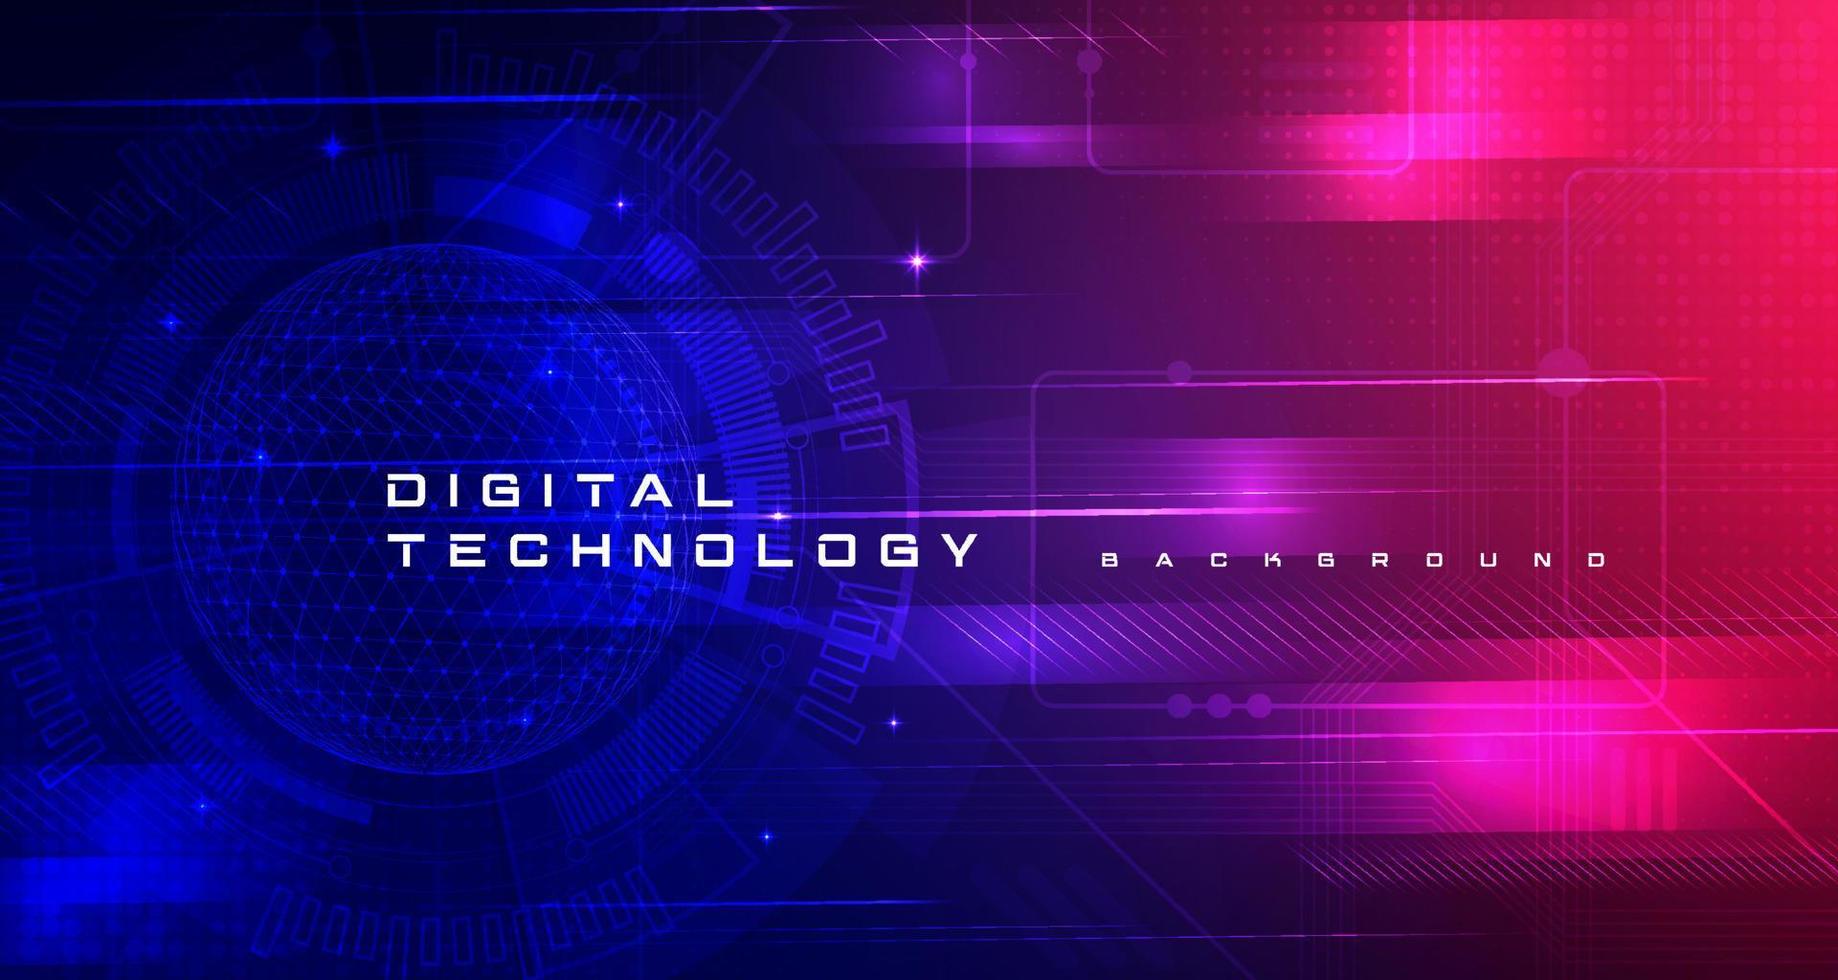 abstract digitaal technologie futuristische stroomkring blauw roze achtergrond, cyber wetenschap techniek, innovatie communicatie toekomst, ai groot gegevens, internet netwerk verbinding, wolk hi-tech illustratie vector